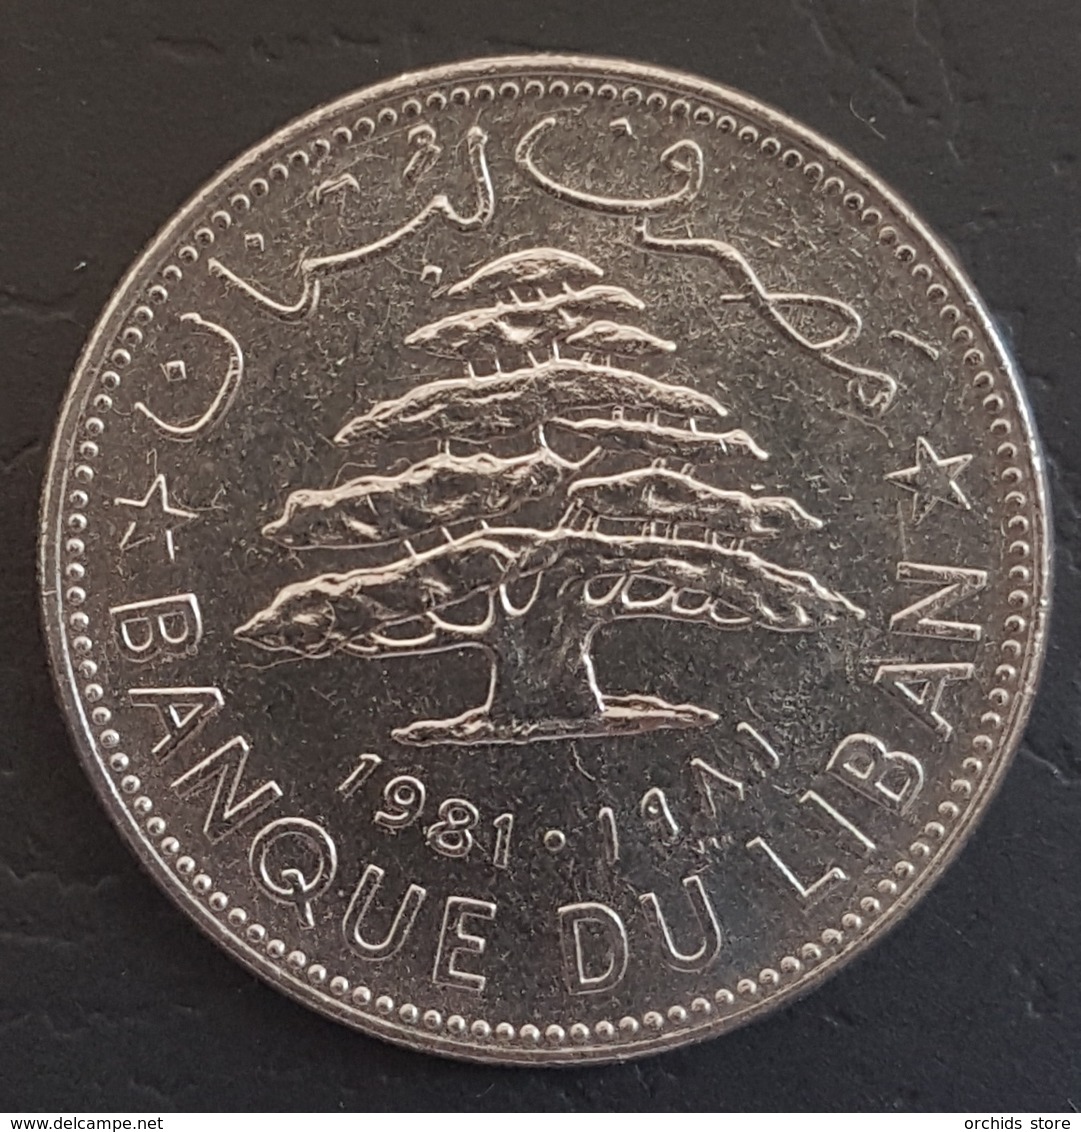 HX - Lebanon 1981 1 Livre Coin - Lebanon